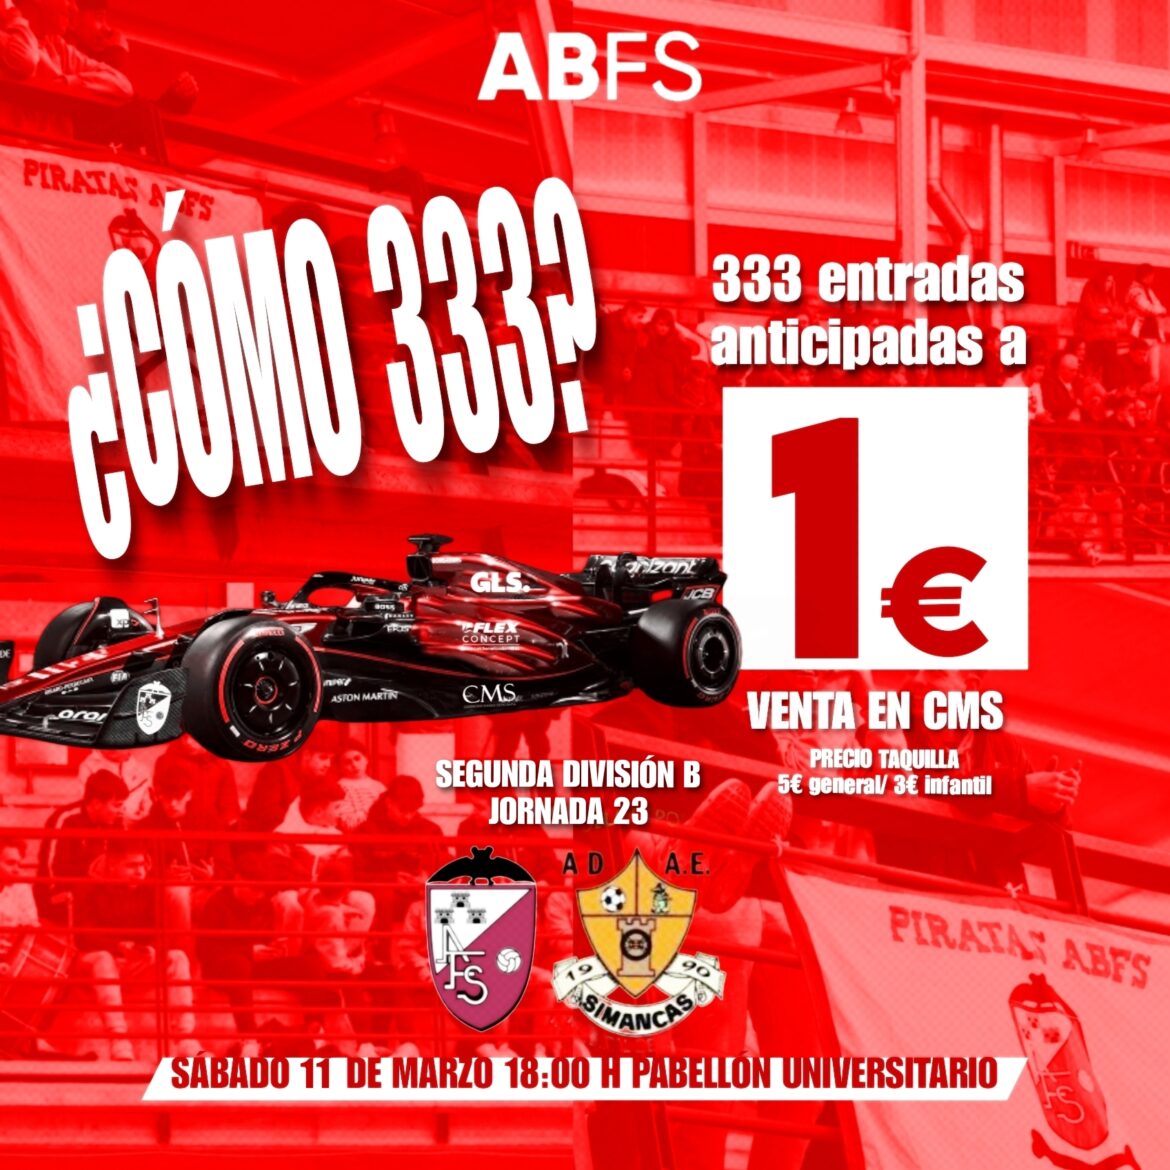 ¿Cómo 333? La promoción de venta de entradas para el Albacete FS -Adae Simancas